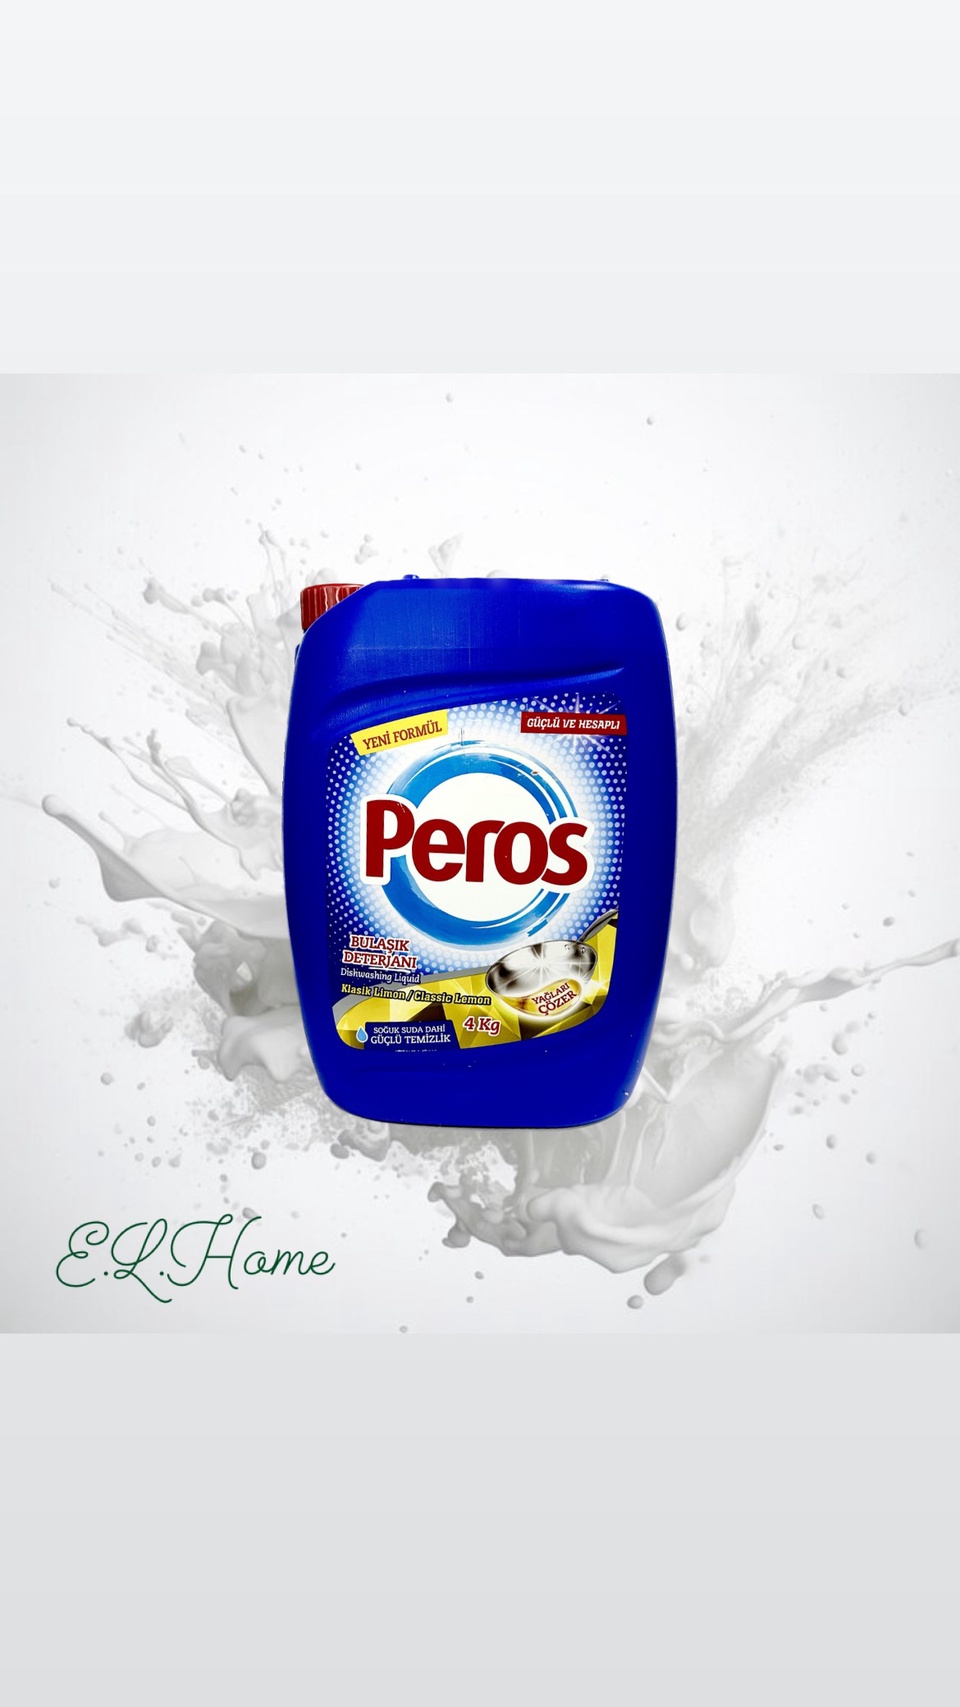 Ср-во для мытья посуды Peros с ароматом Лимона 4кг - 650 ₽, заказать онлайн.